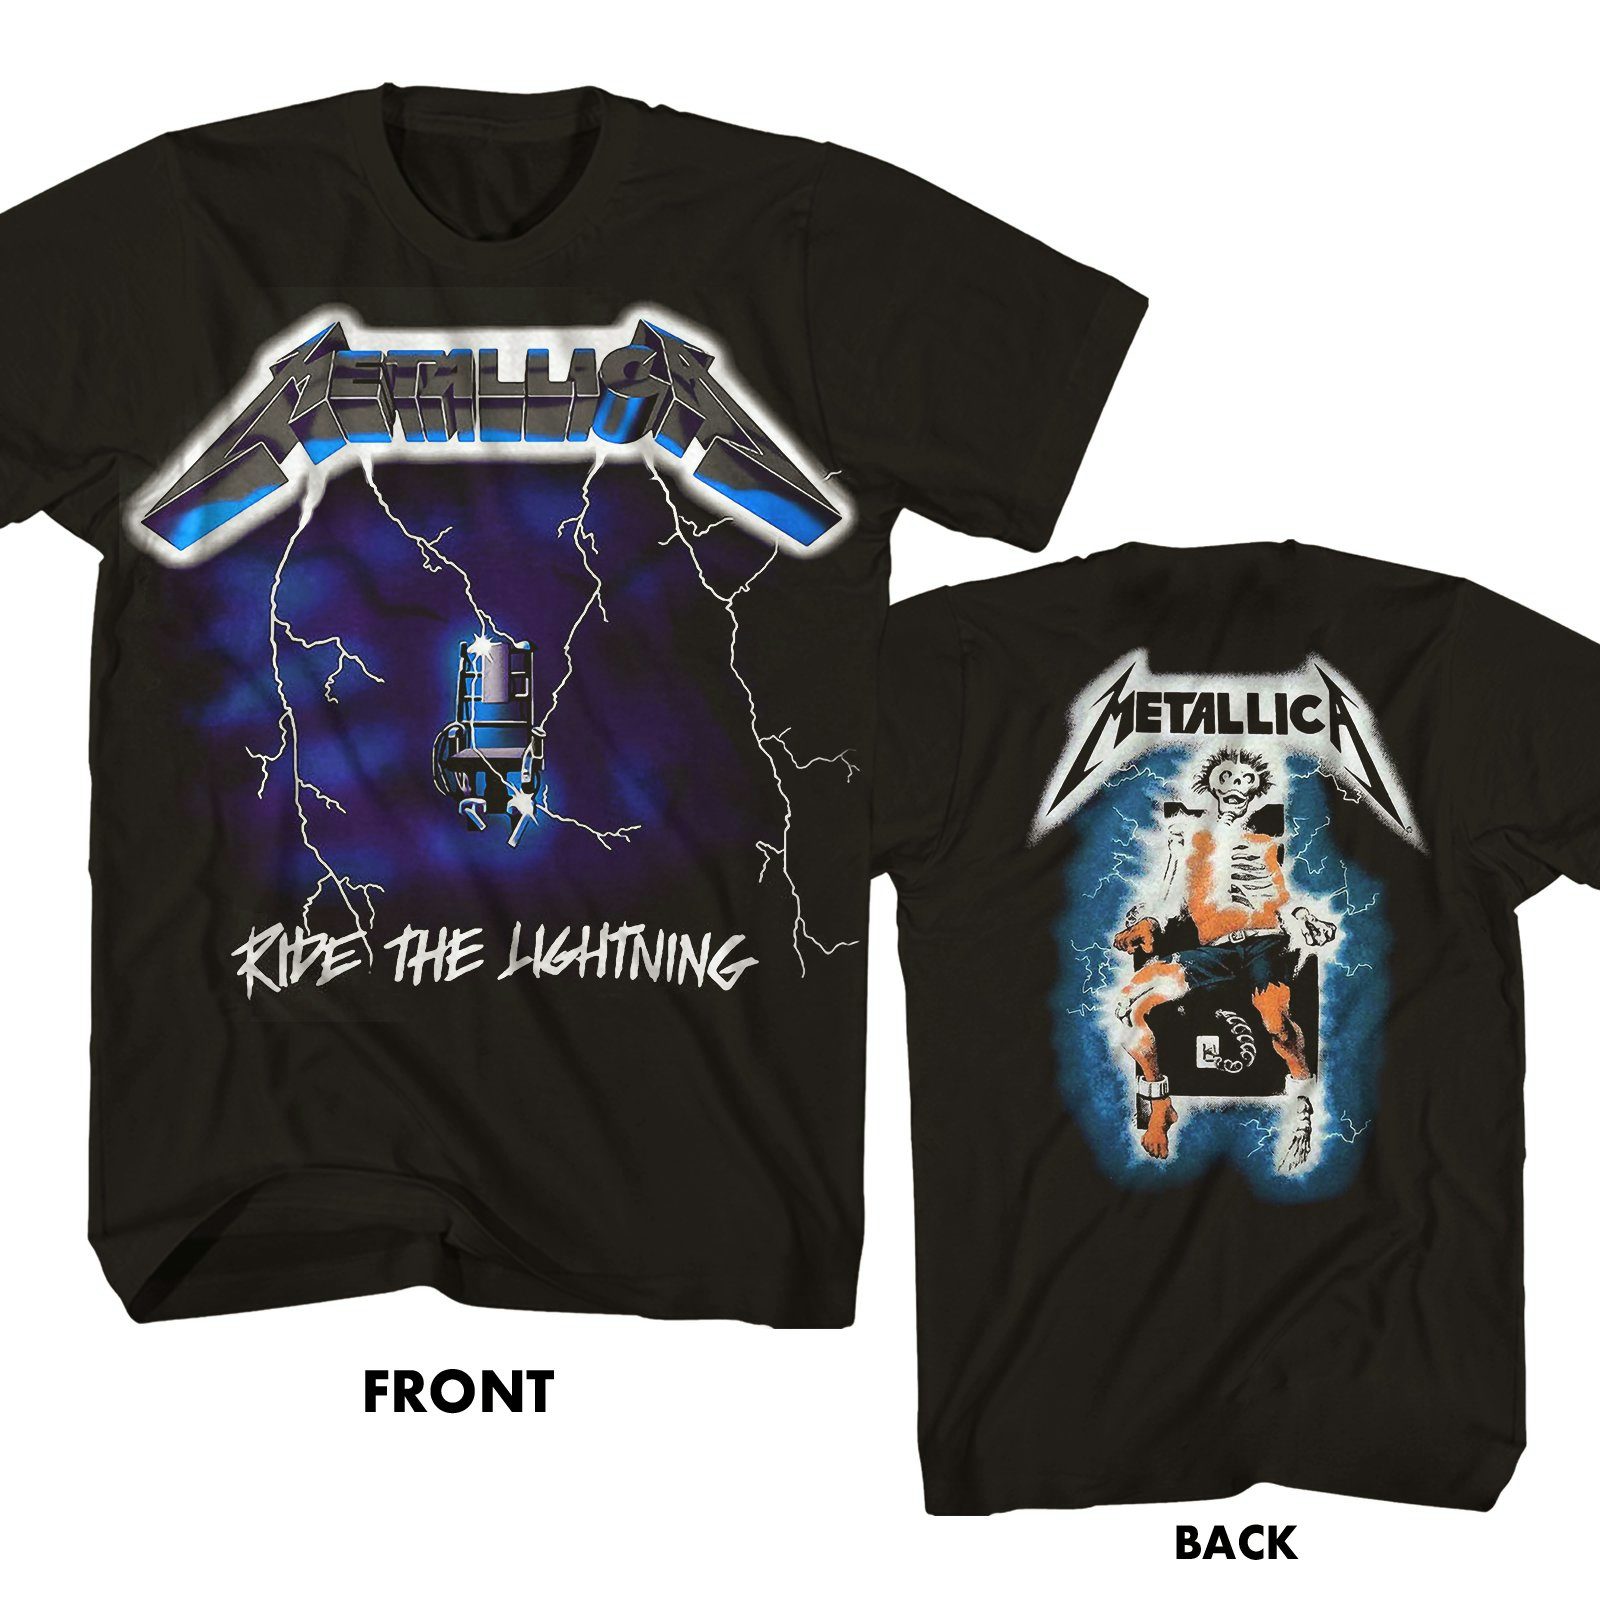 Metallica 'Ride The Lightning' T-Shirt NEW & OFFICIAL!